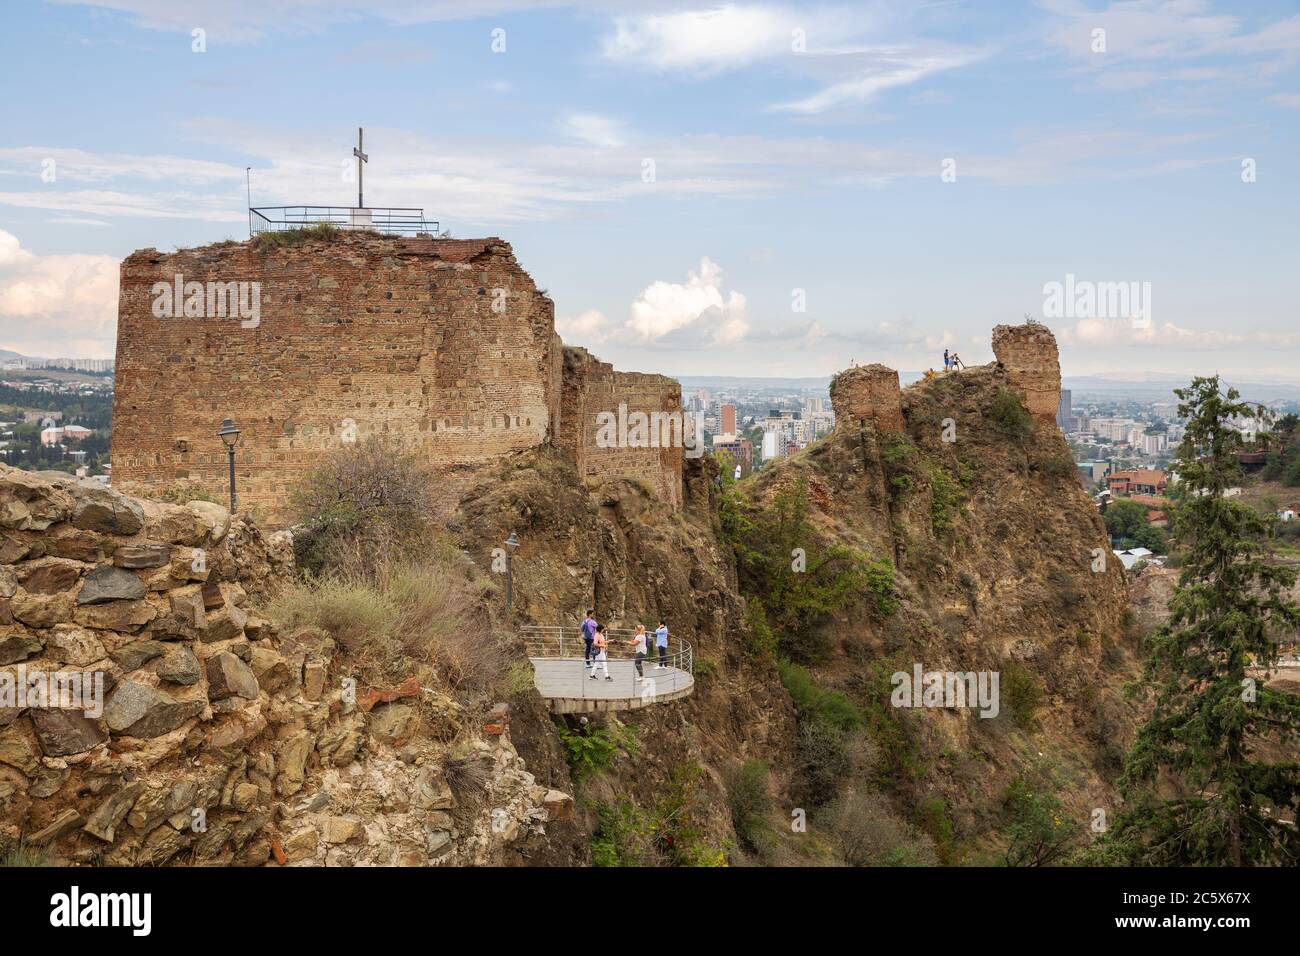 TBILISSI, GÉORGIE - 23 SEPTEMBRE 2018 : les ruines de l'ancienne forteresse de Narikala. Touristes sur la plate-forme de visualisation Banque D'Images